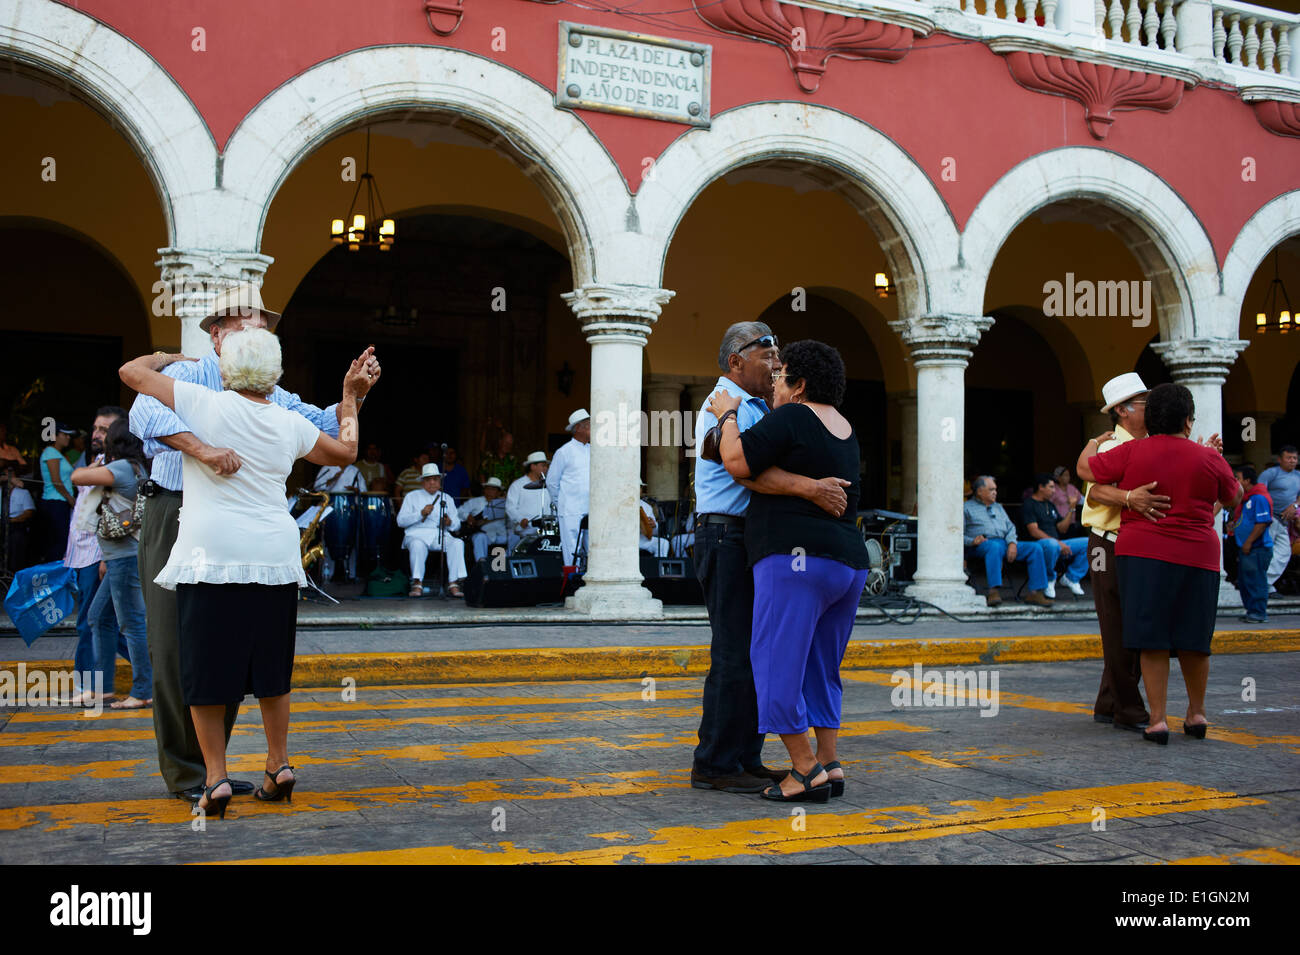 México, Estado de Yucatán, Mérida, capital de Yucatán, en la plaza de la independencia, el palacio municipal, bailarines y músicos mexicanos Foto de stock